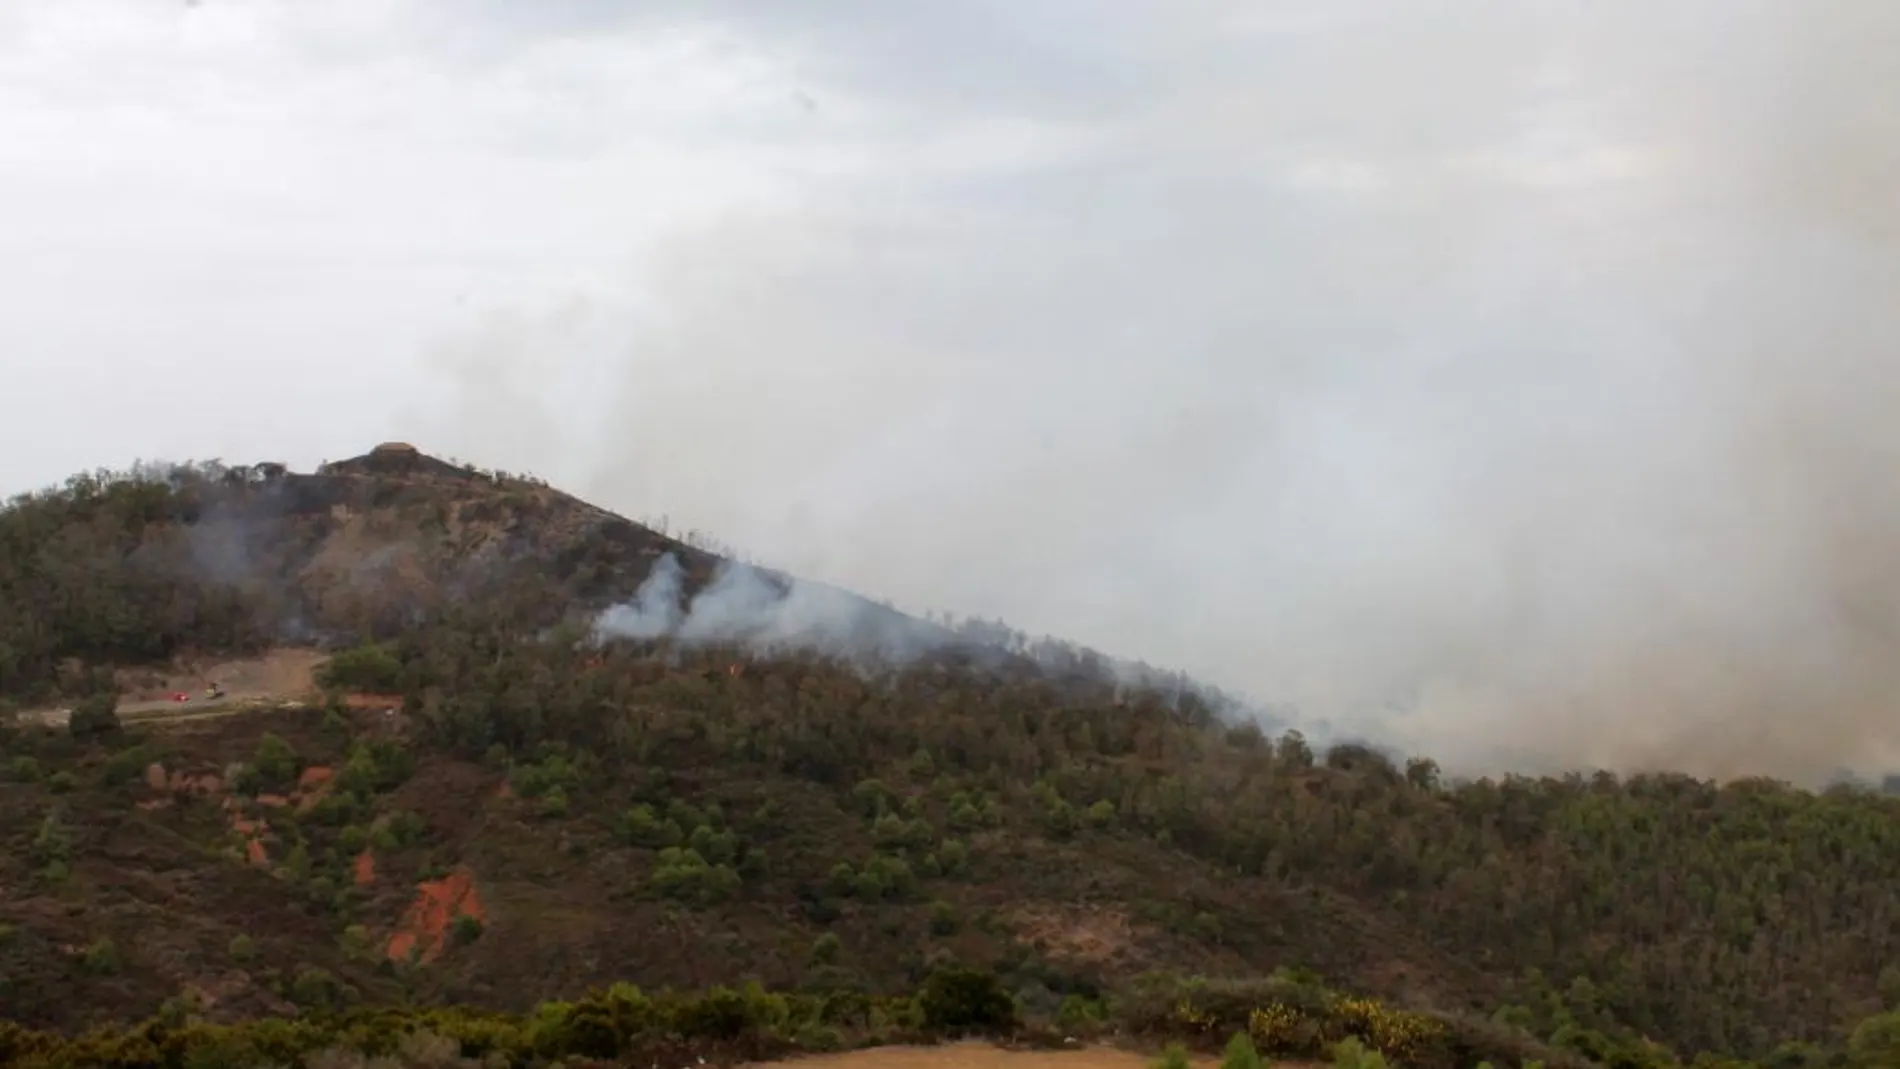 Un importante incendio forestal declarado en la zona de García Aldave de Ceuta obligó a desalojar el Centro de Estancia Temporal de Inmigrantes (CETI) y un barrio cercano